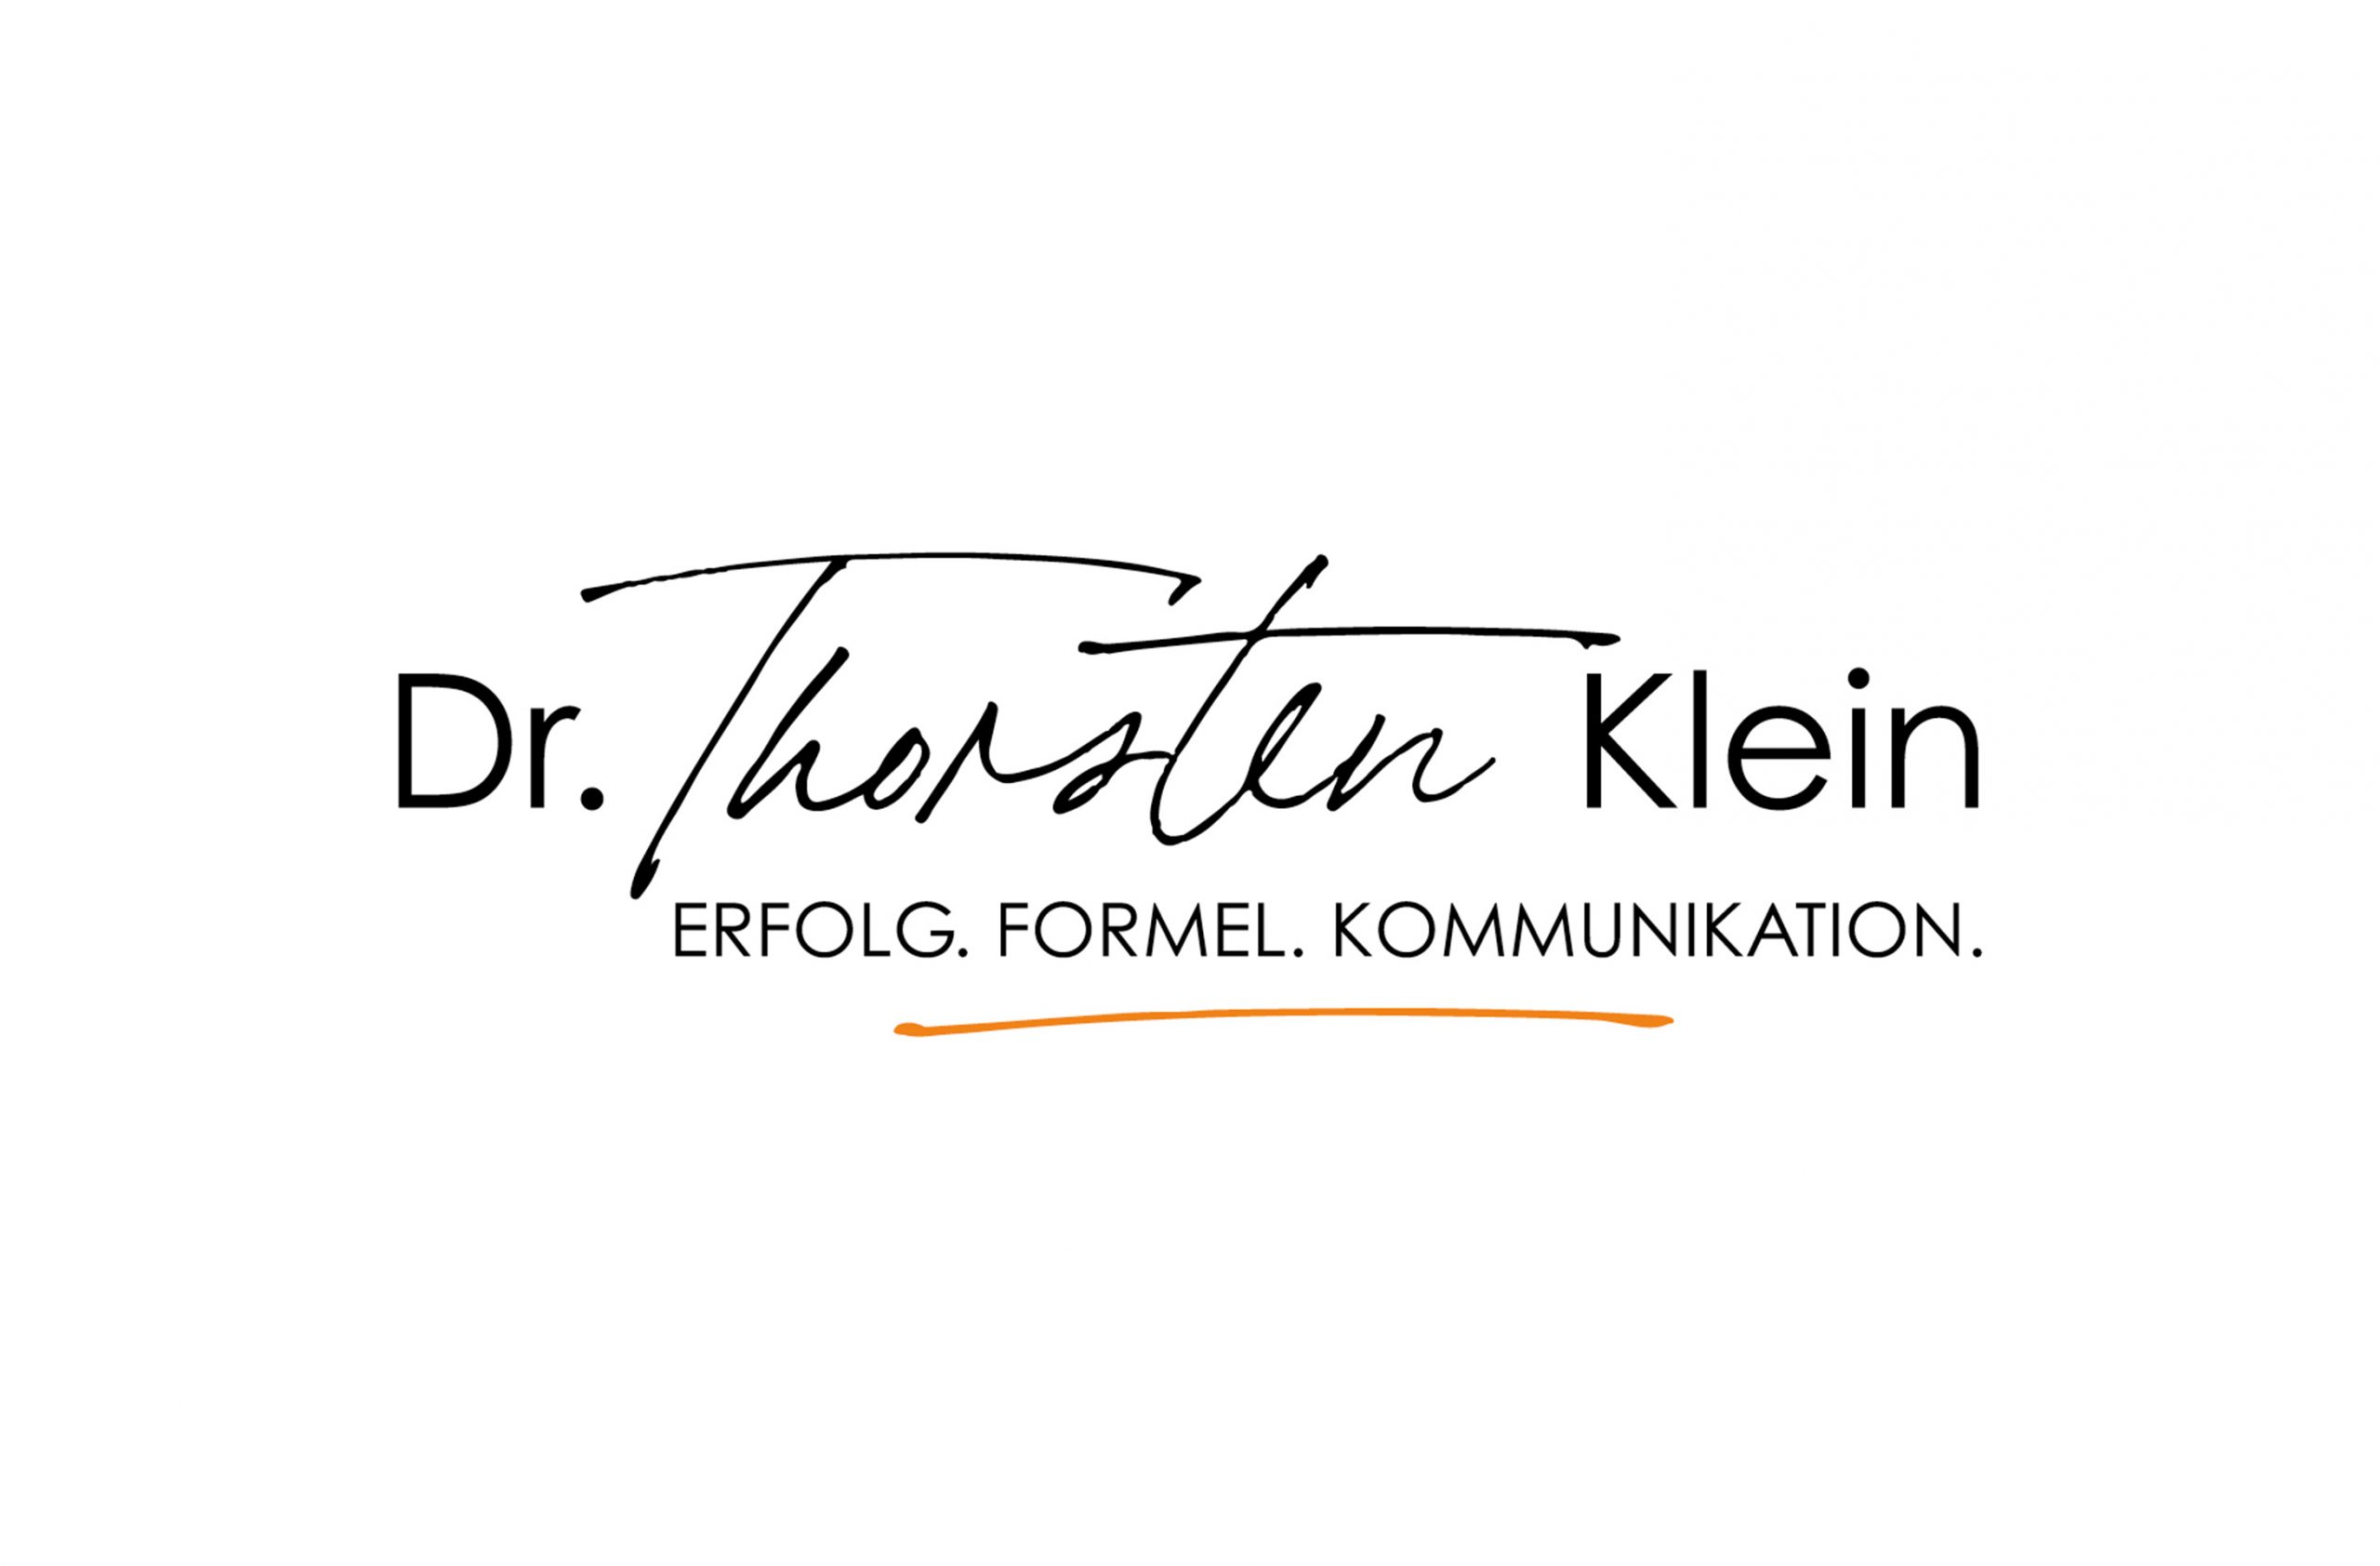 Dr. Thorsten Klein